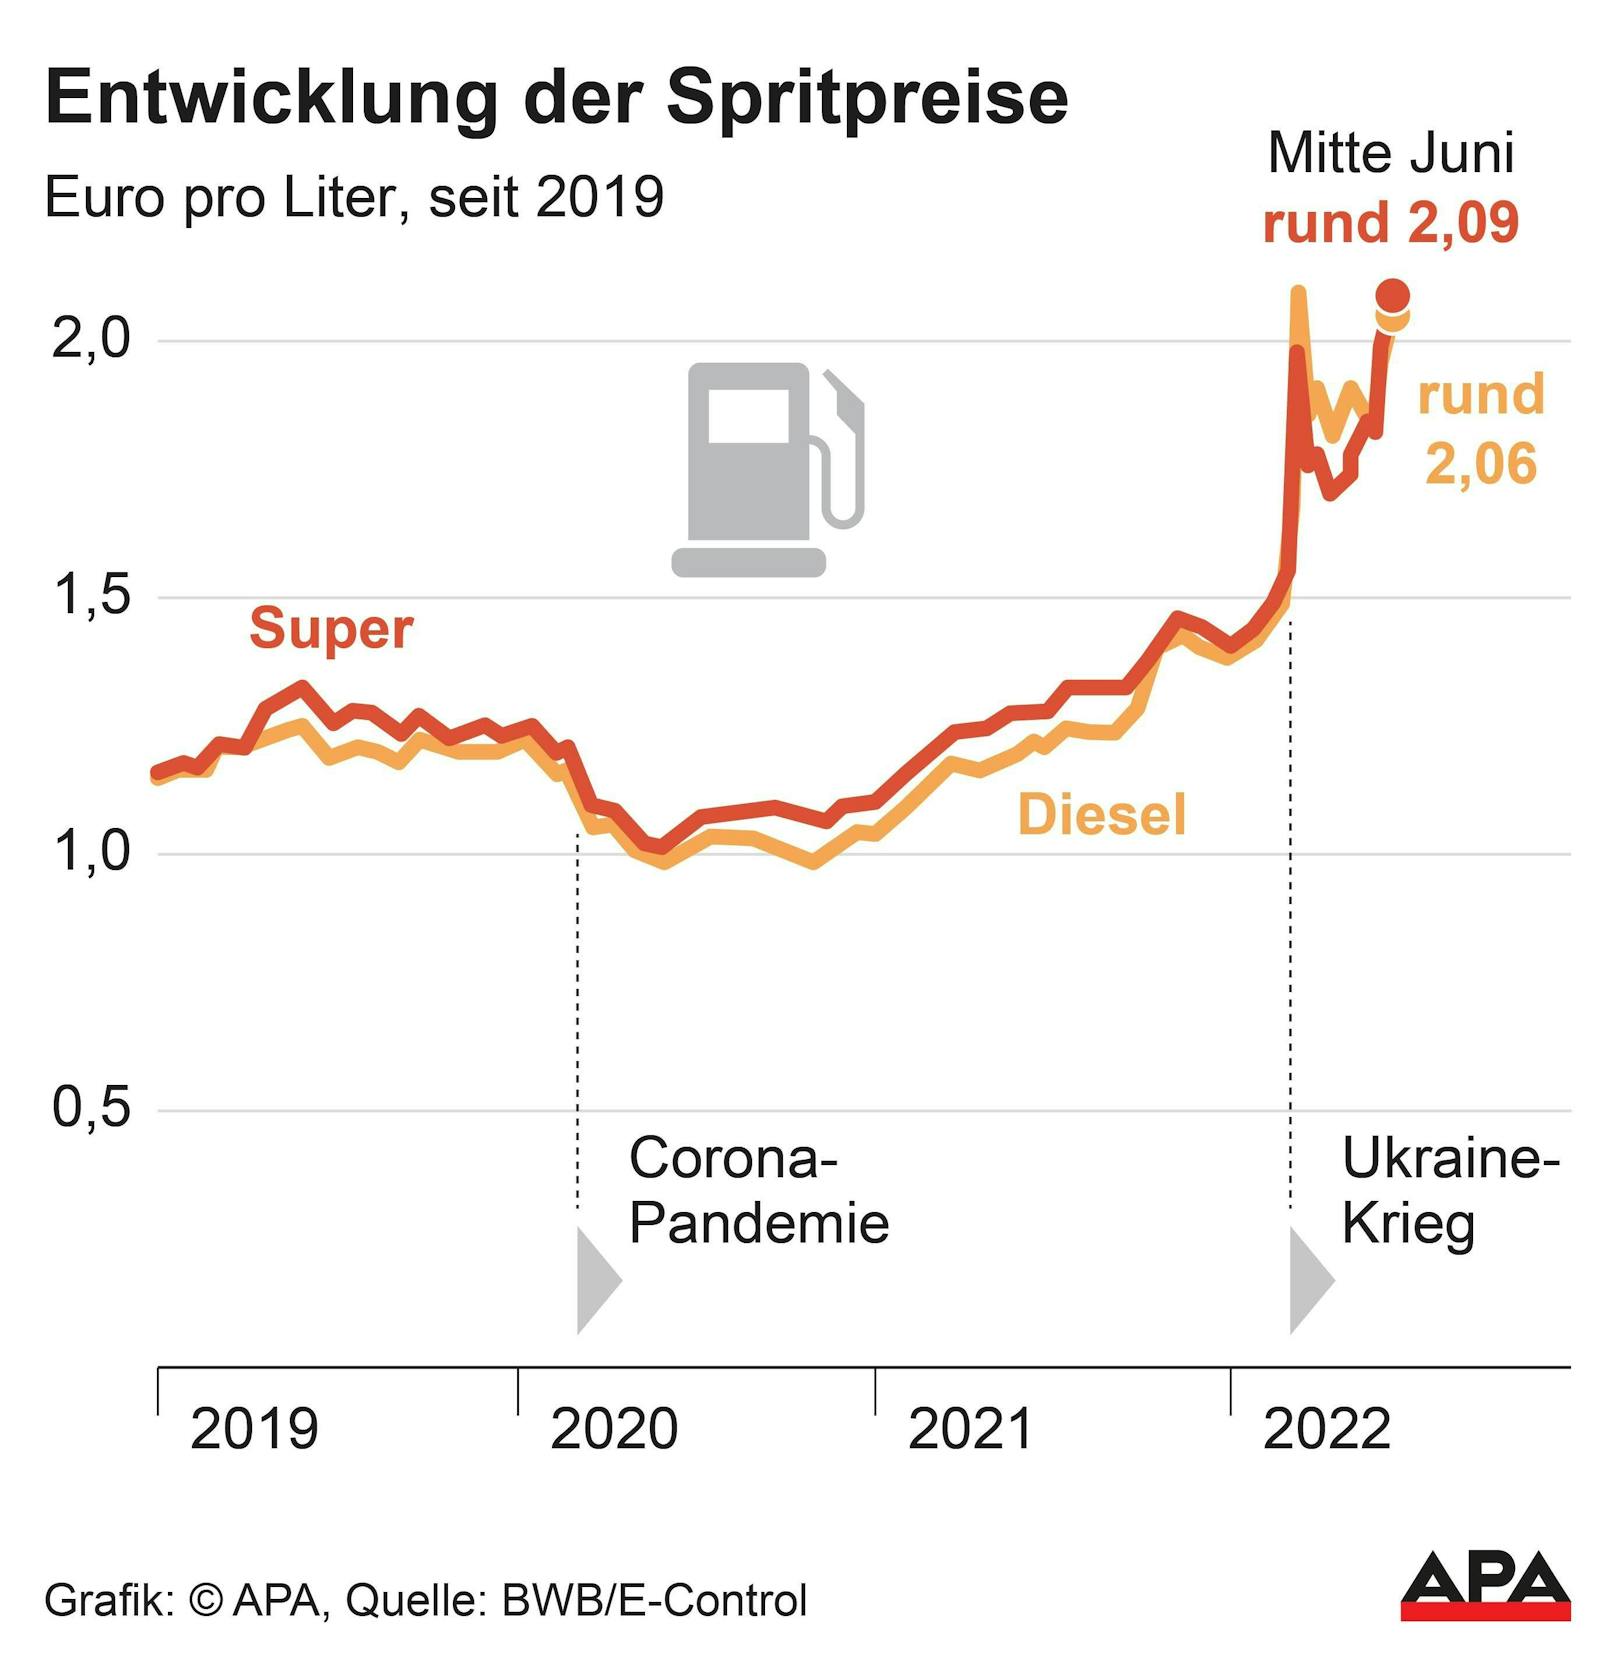 Diesel und Super-Benzin, Preise pro Liter seit 2019.